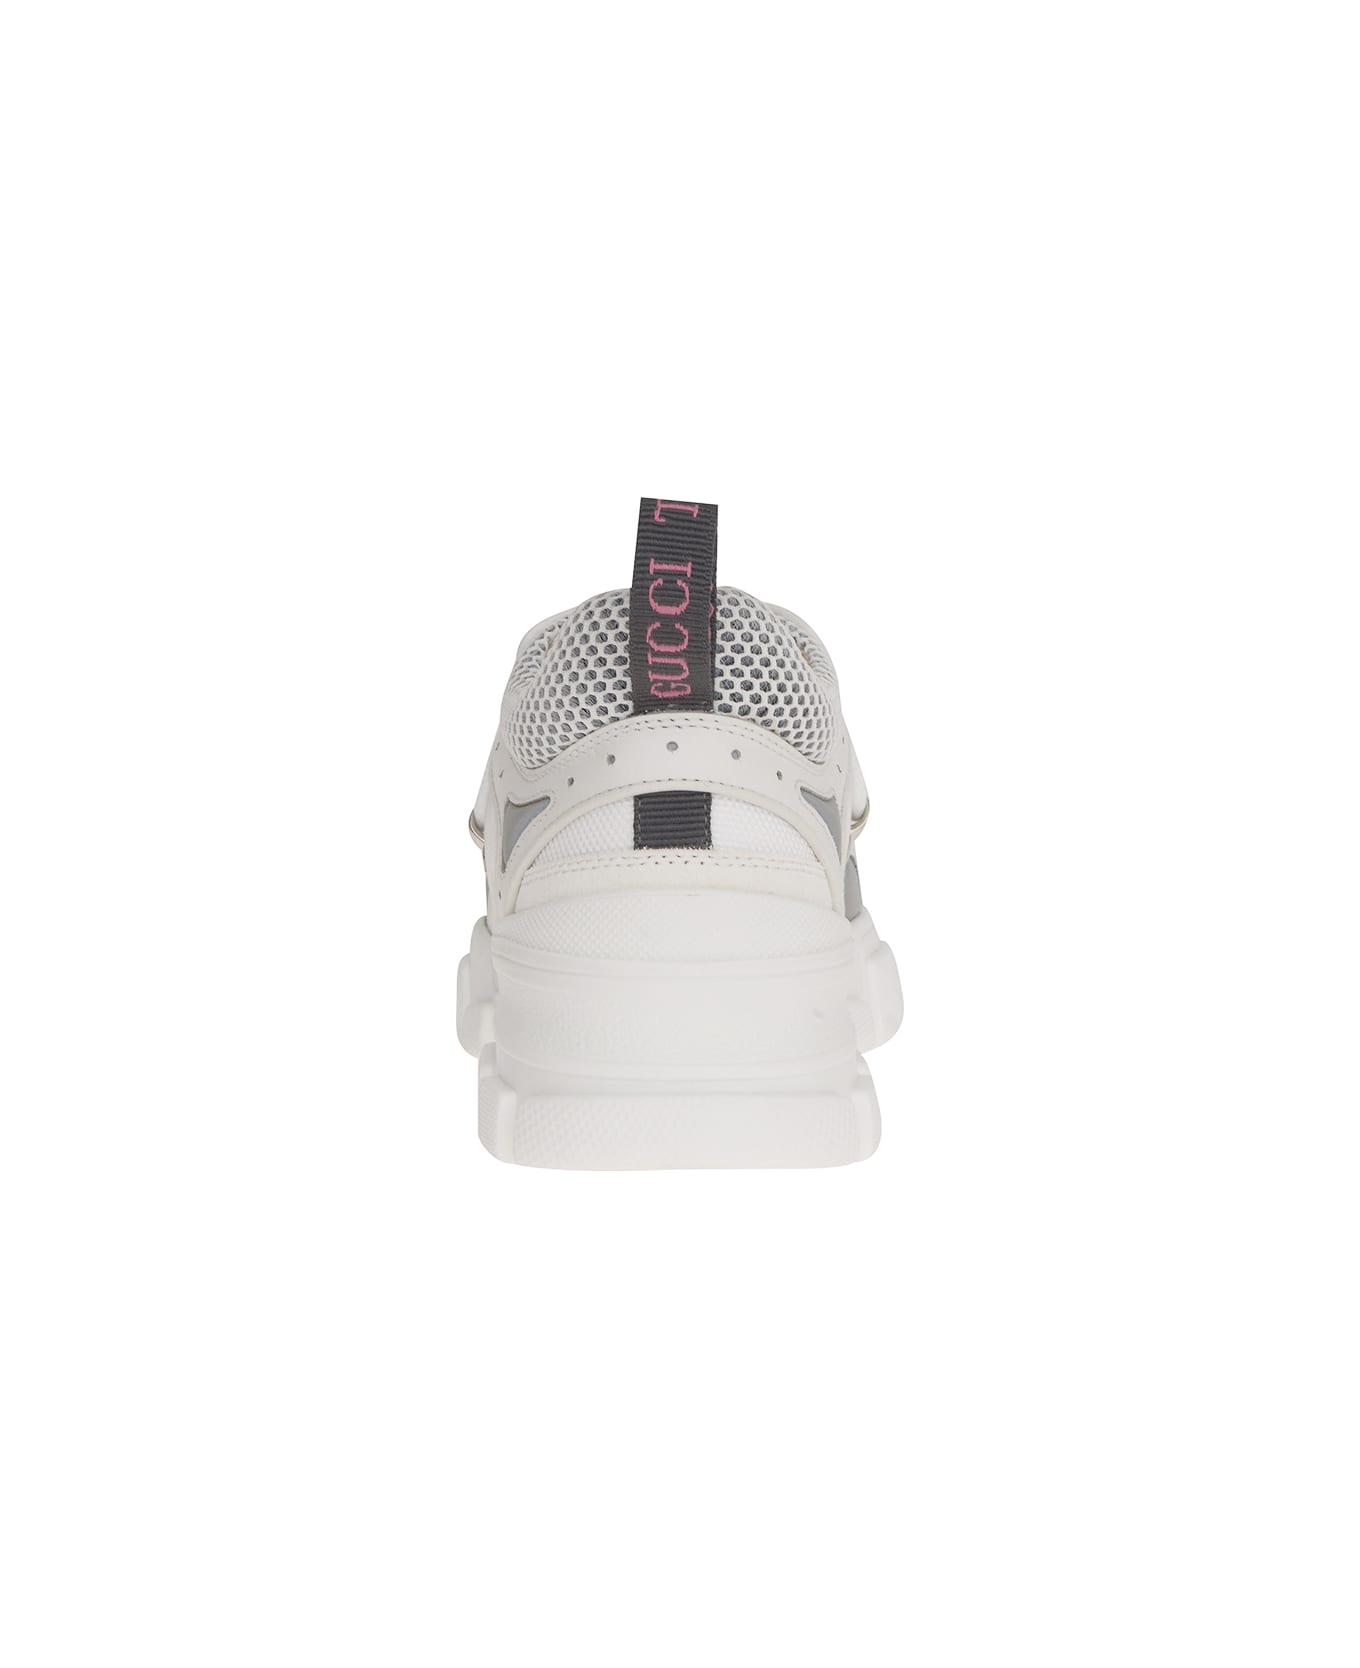 Gucci Flashtrack Sneakers - White